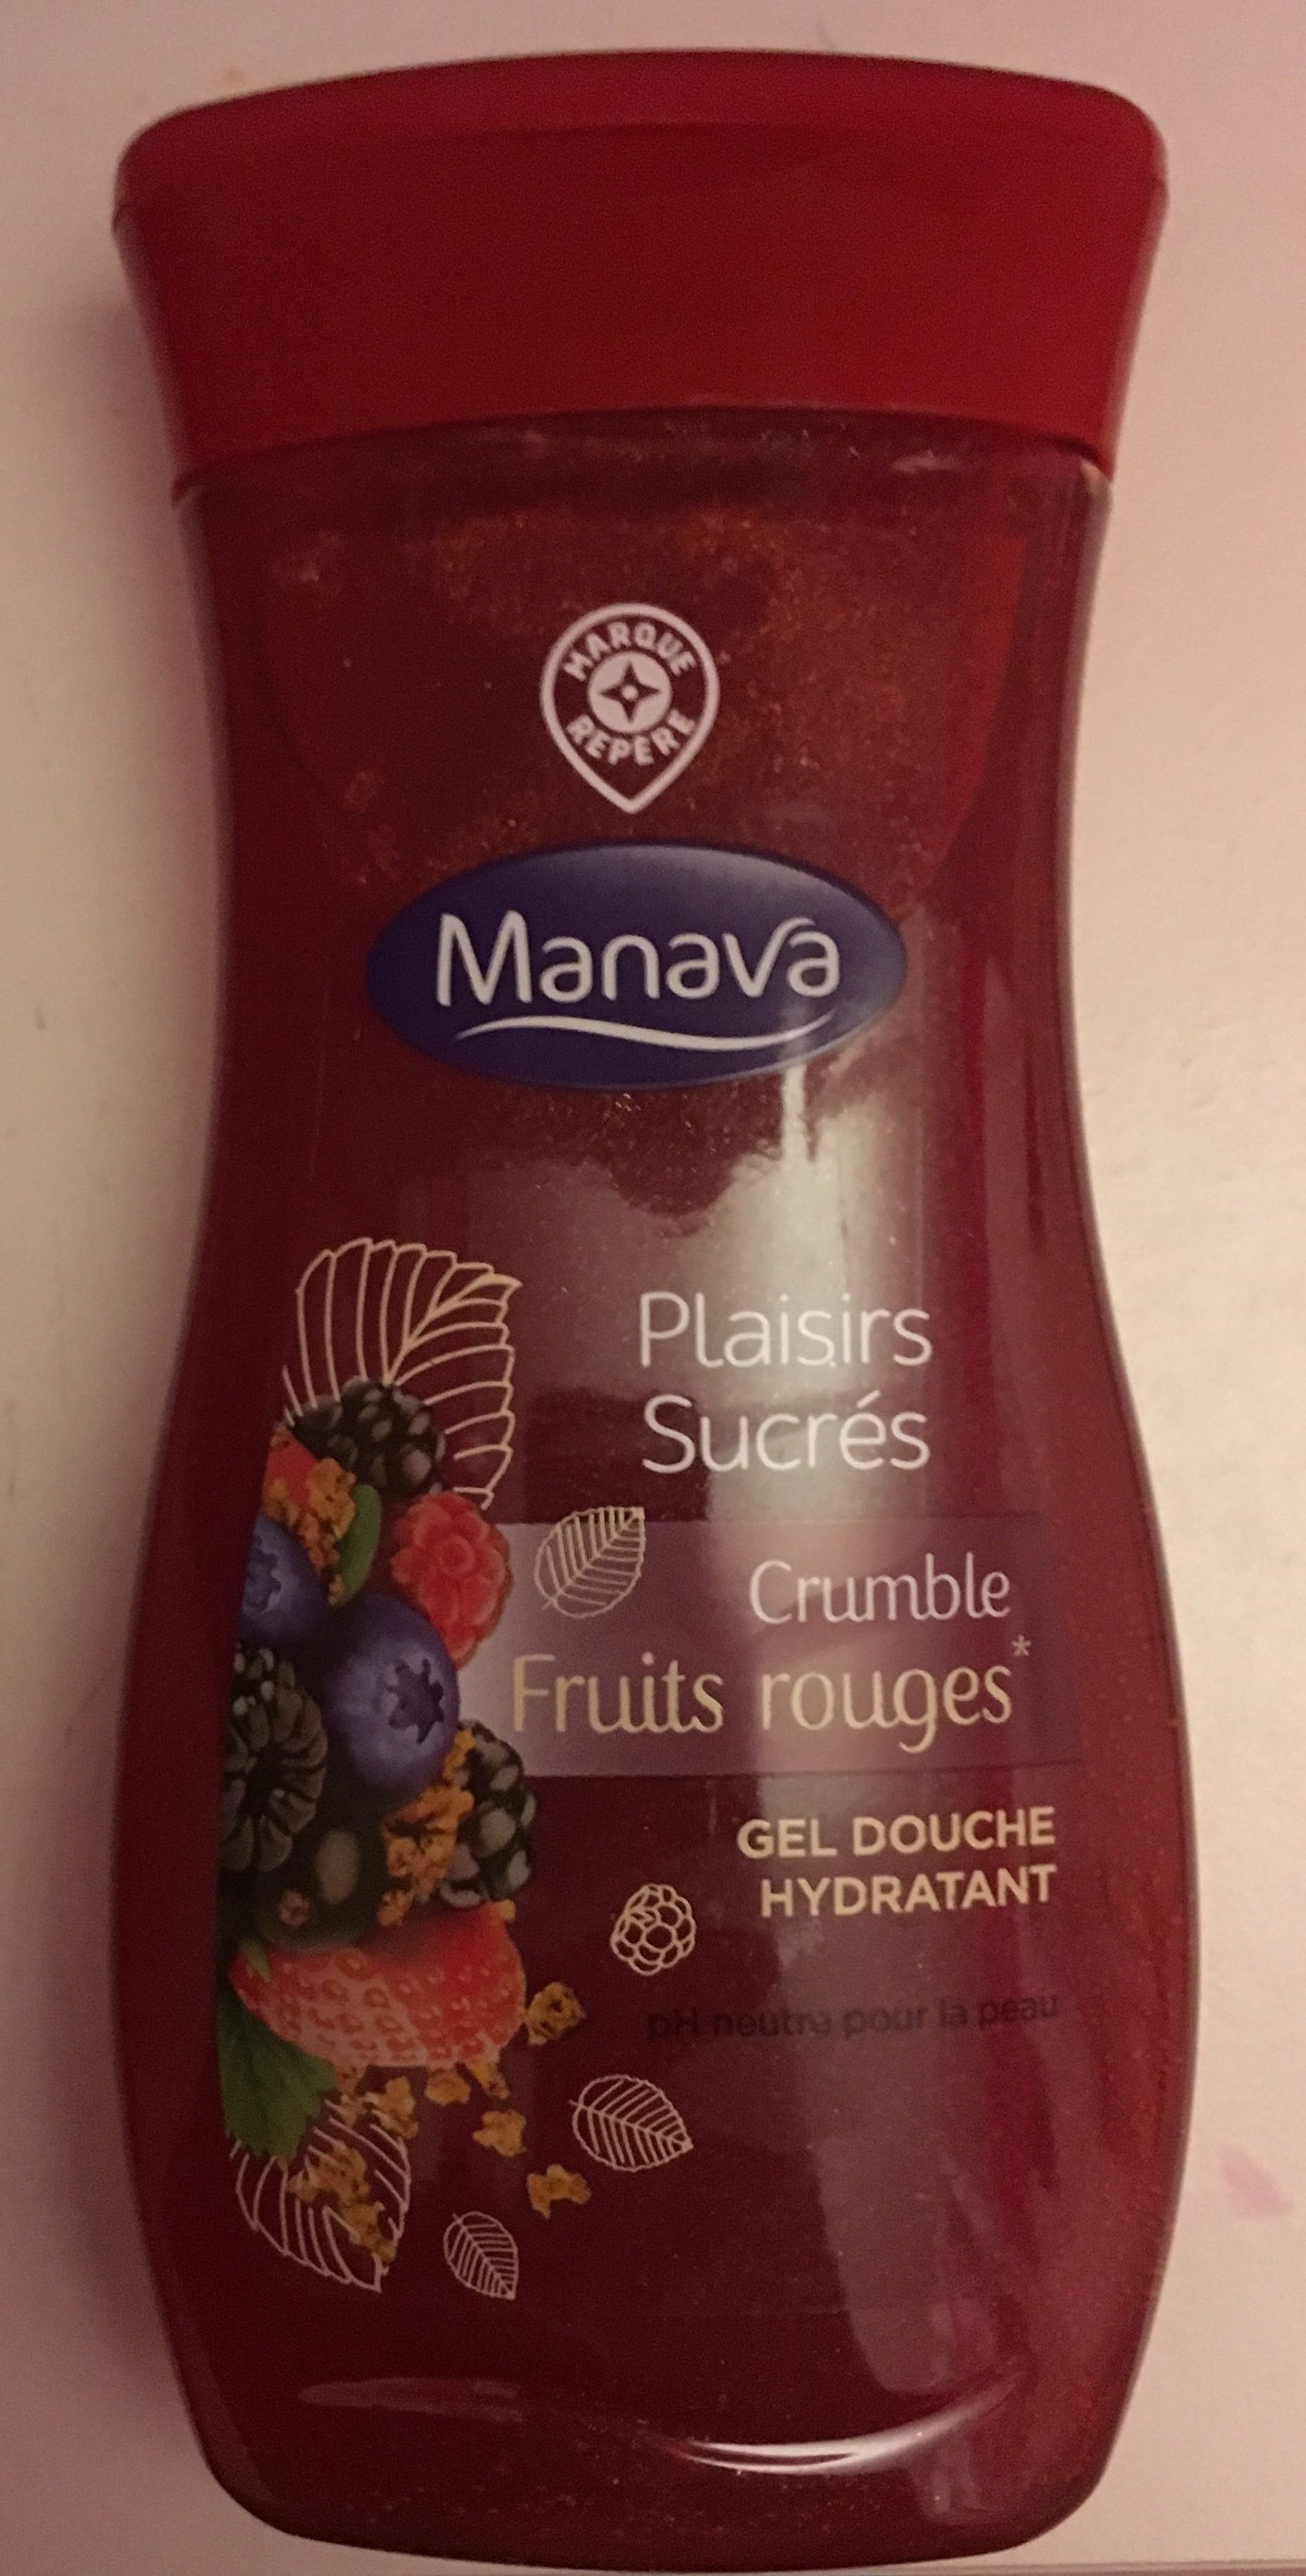 Plaisirs sucrés crumble fruits rouges - Product - fr